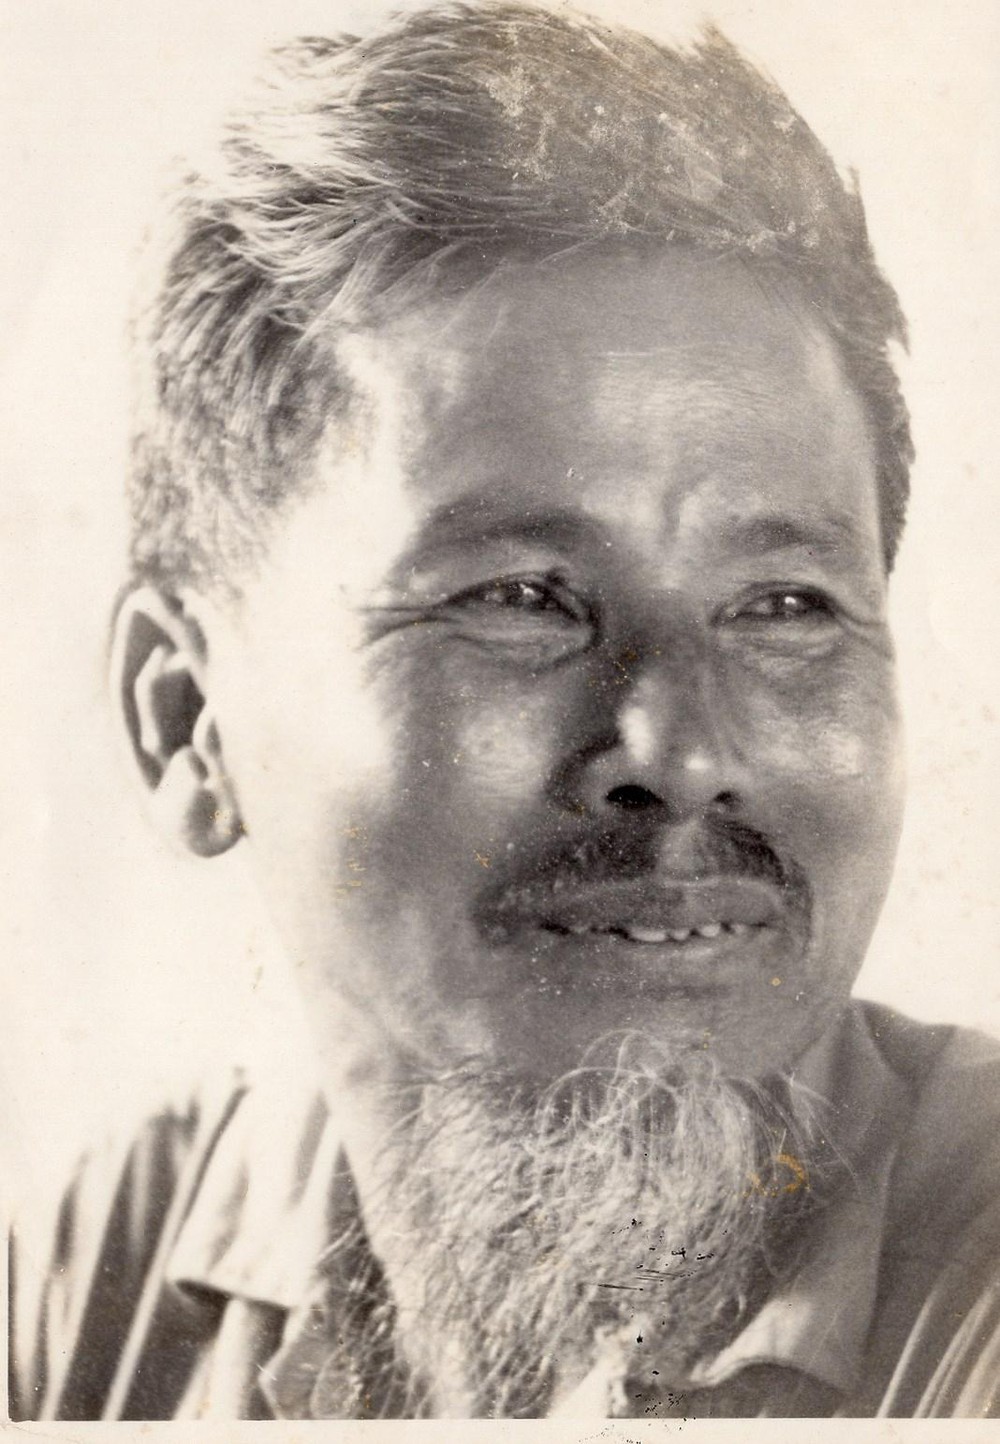 Anh minh hoa Nguyen Hong 2 - Nguyên Hồng và những trang văn khóc cho những kiếp người cùng khổ